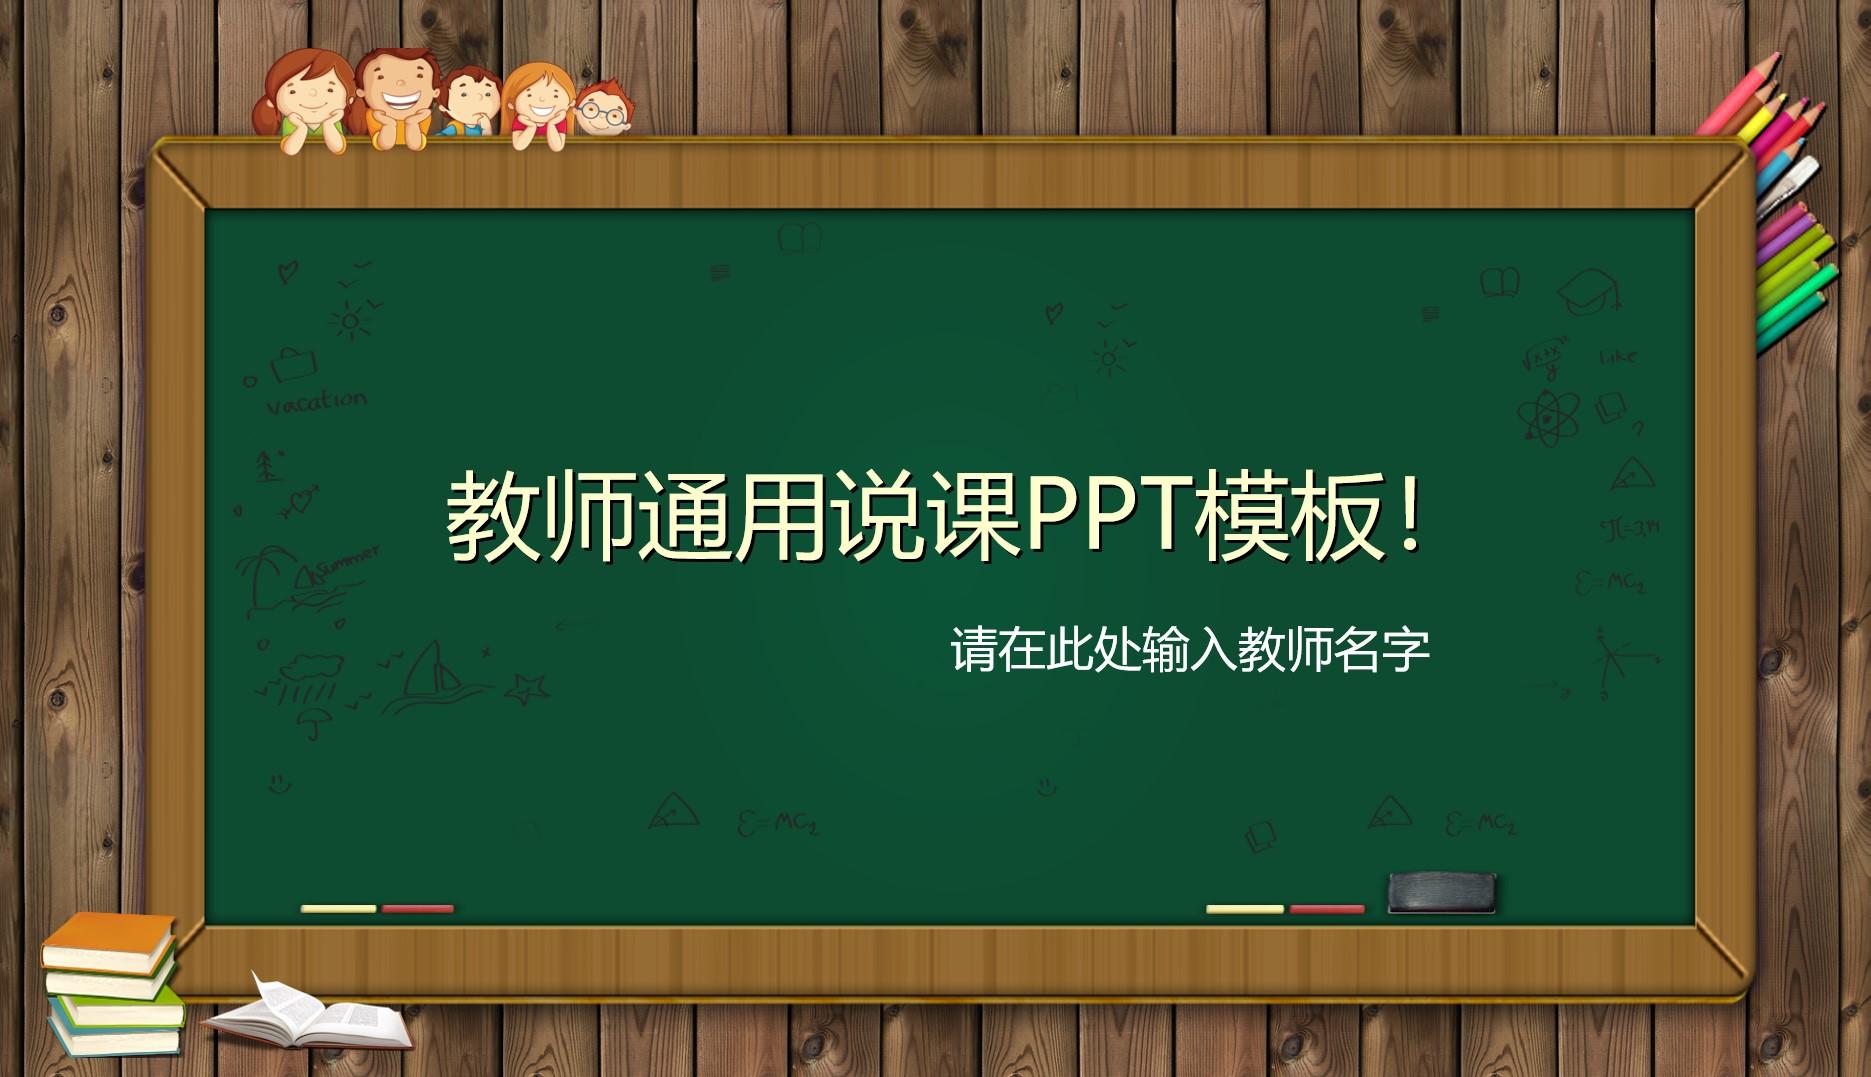 教育教学橙色绿色青色实景教师 通用 ppt 模板 名字云素材PPT模板1672482926851